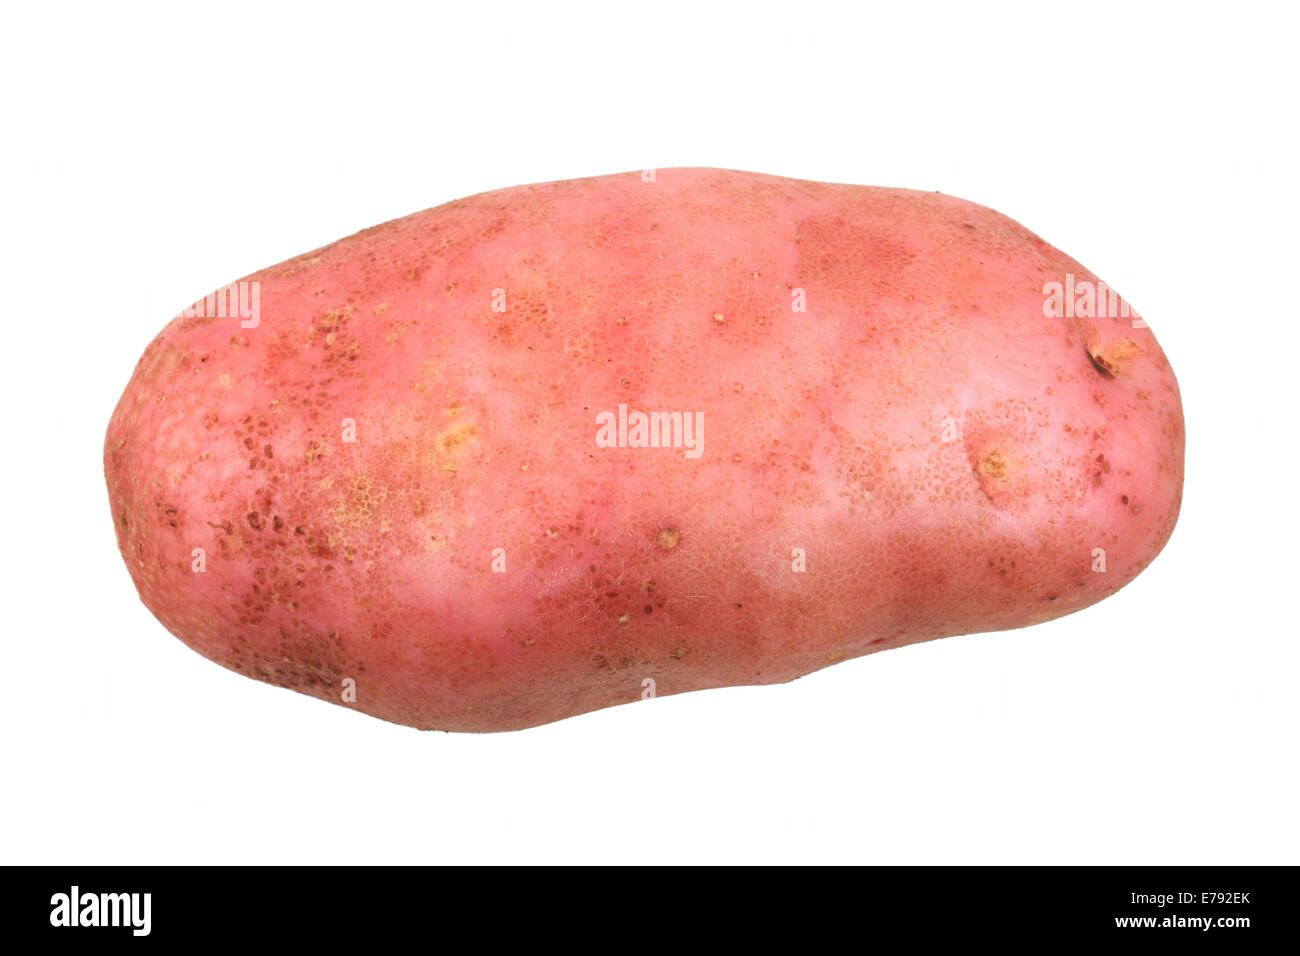 Potato, Reichskanzler variety Stock Photo